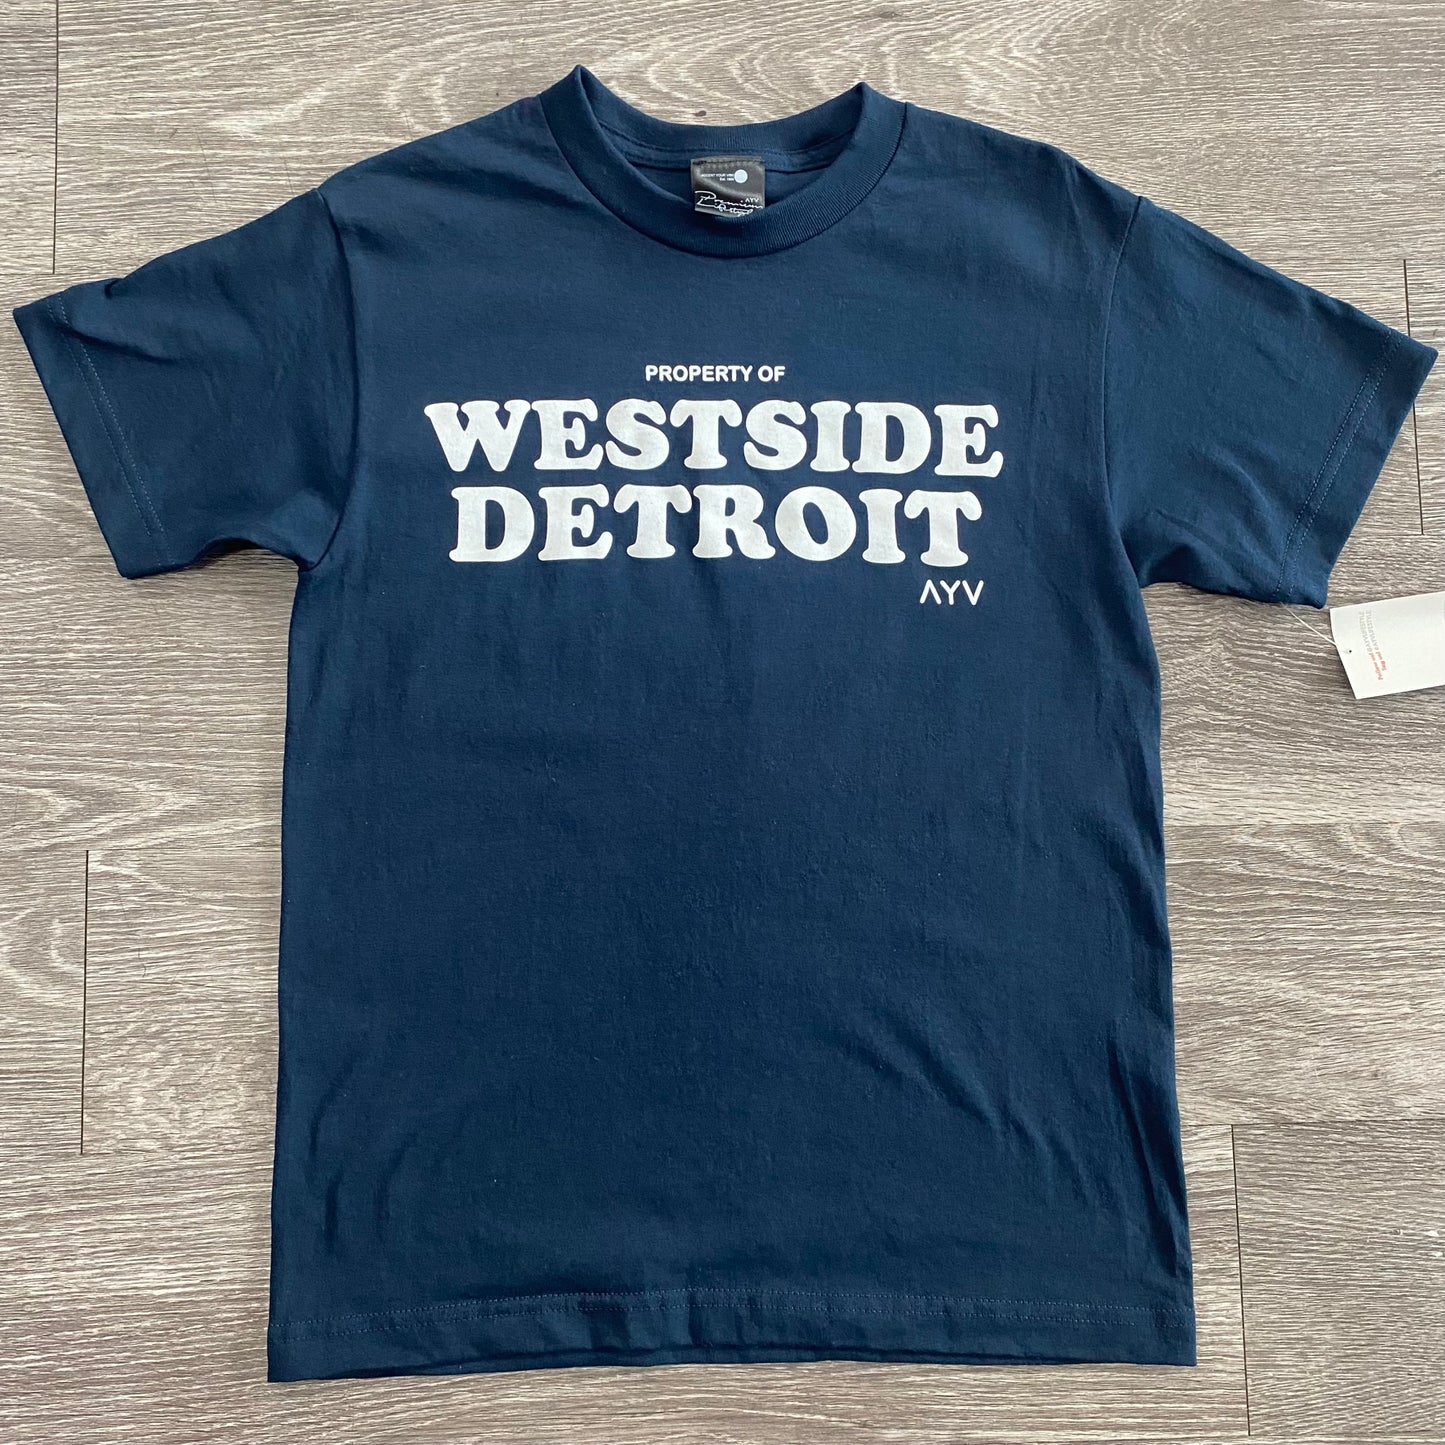 Property of Westside Detroit